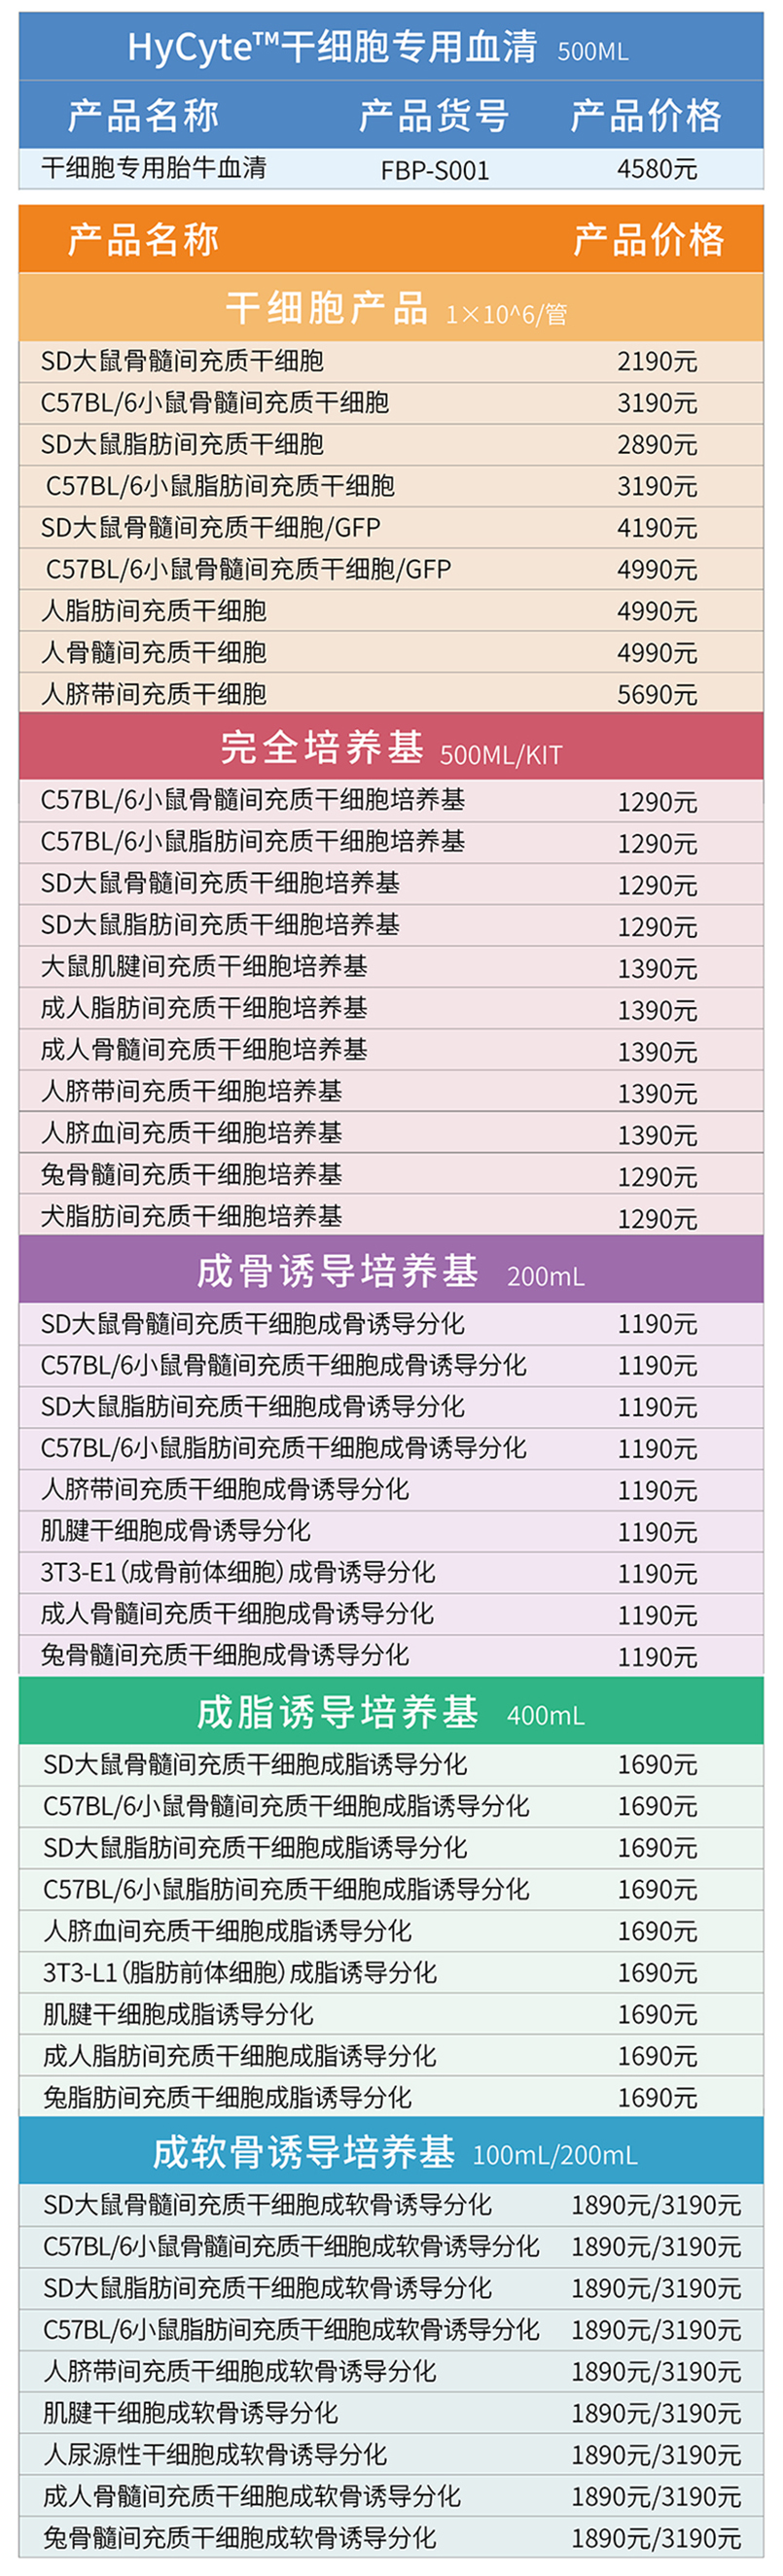 干细胞产品双12促销清单-1208.jpg